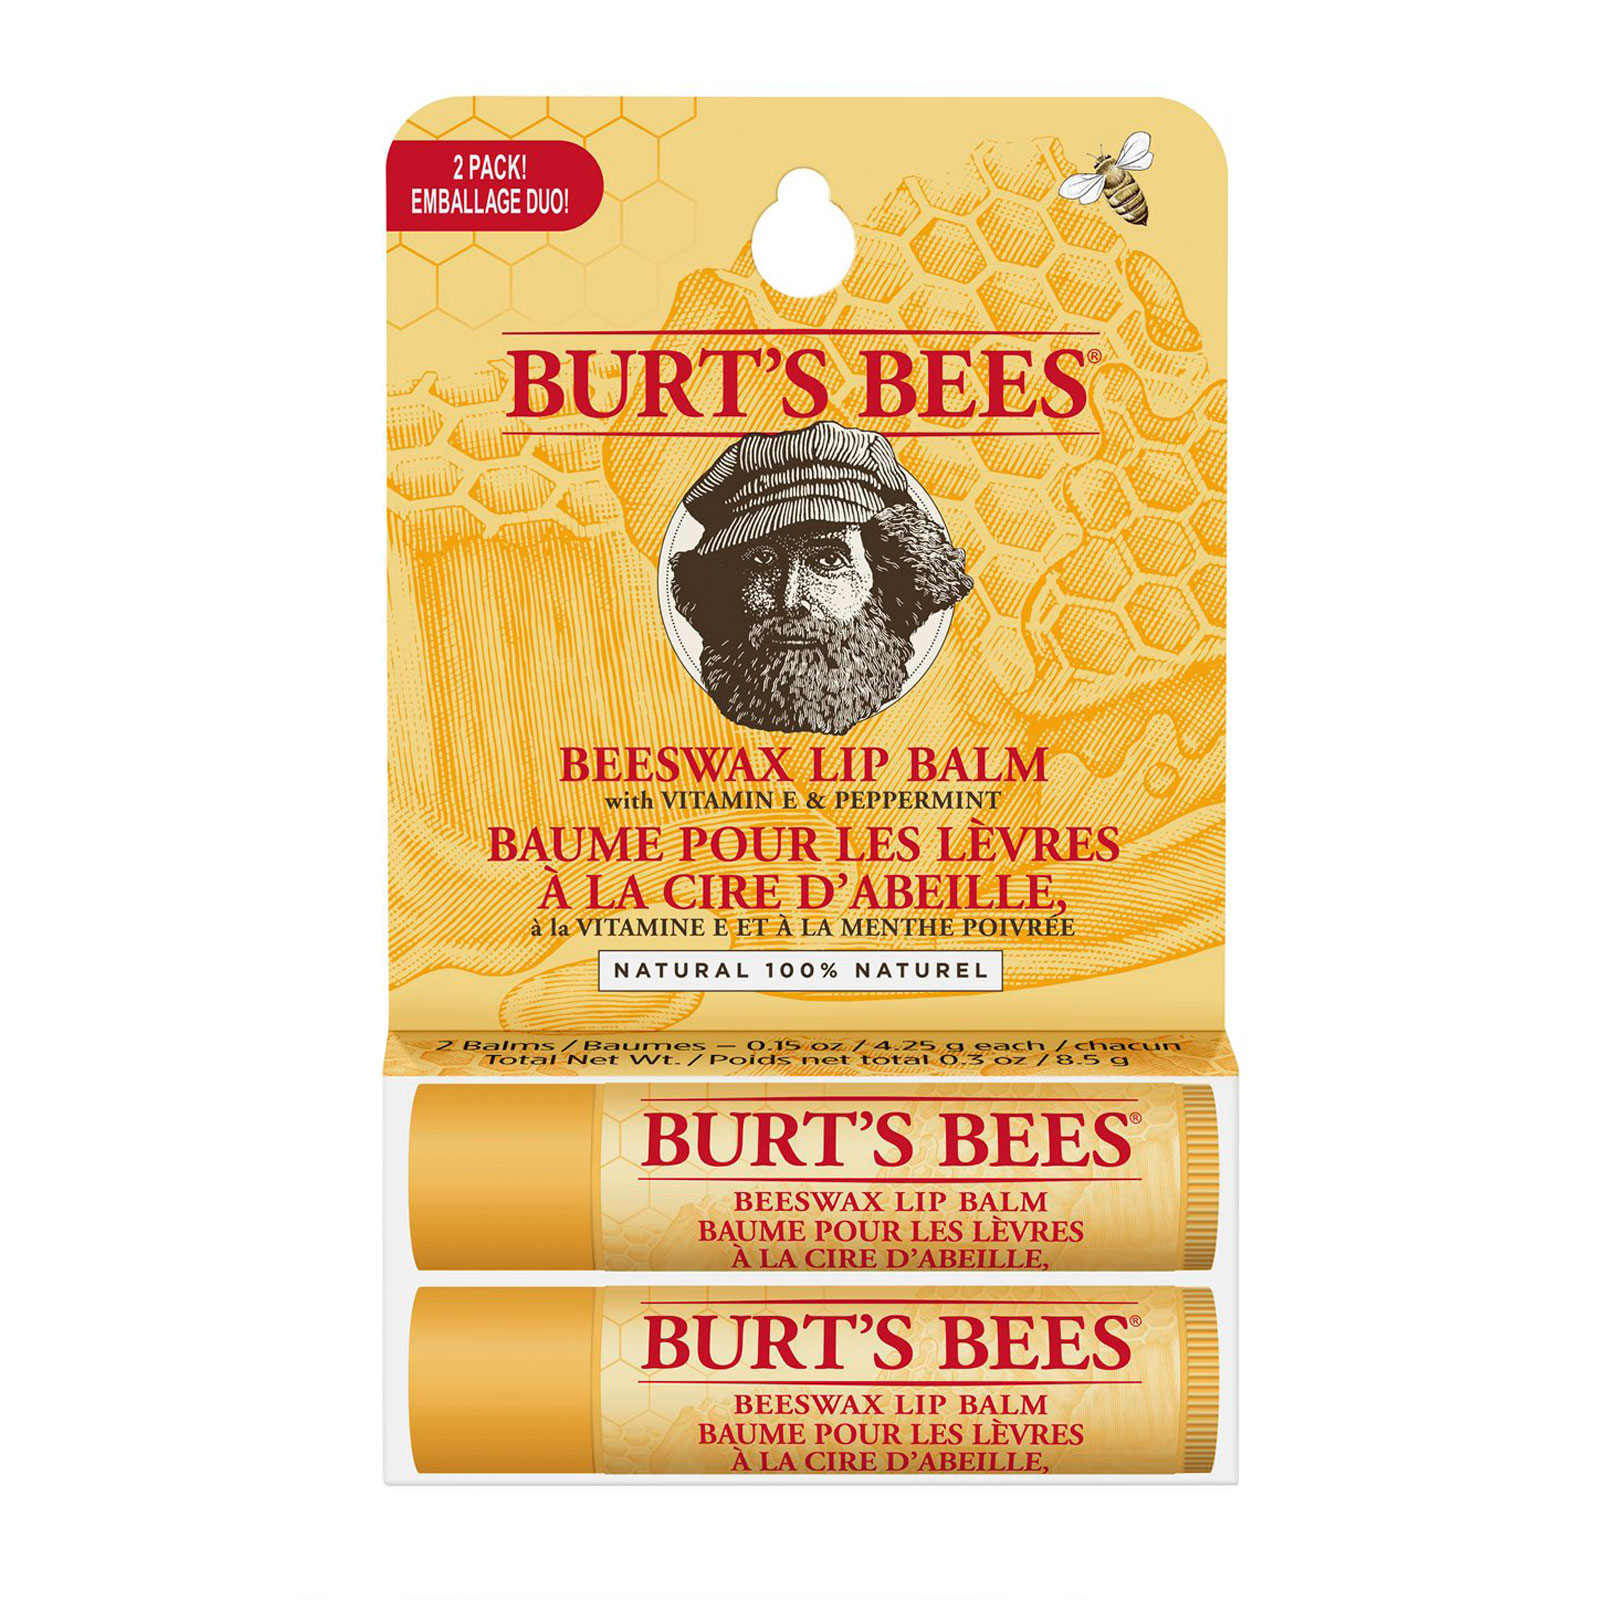 Burt's Bees 100% Natural Origin Moisturising Beeswax Lip Balm Duo